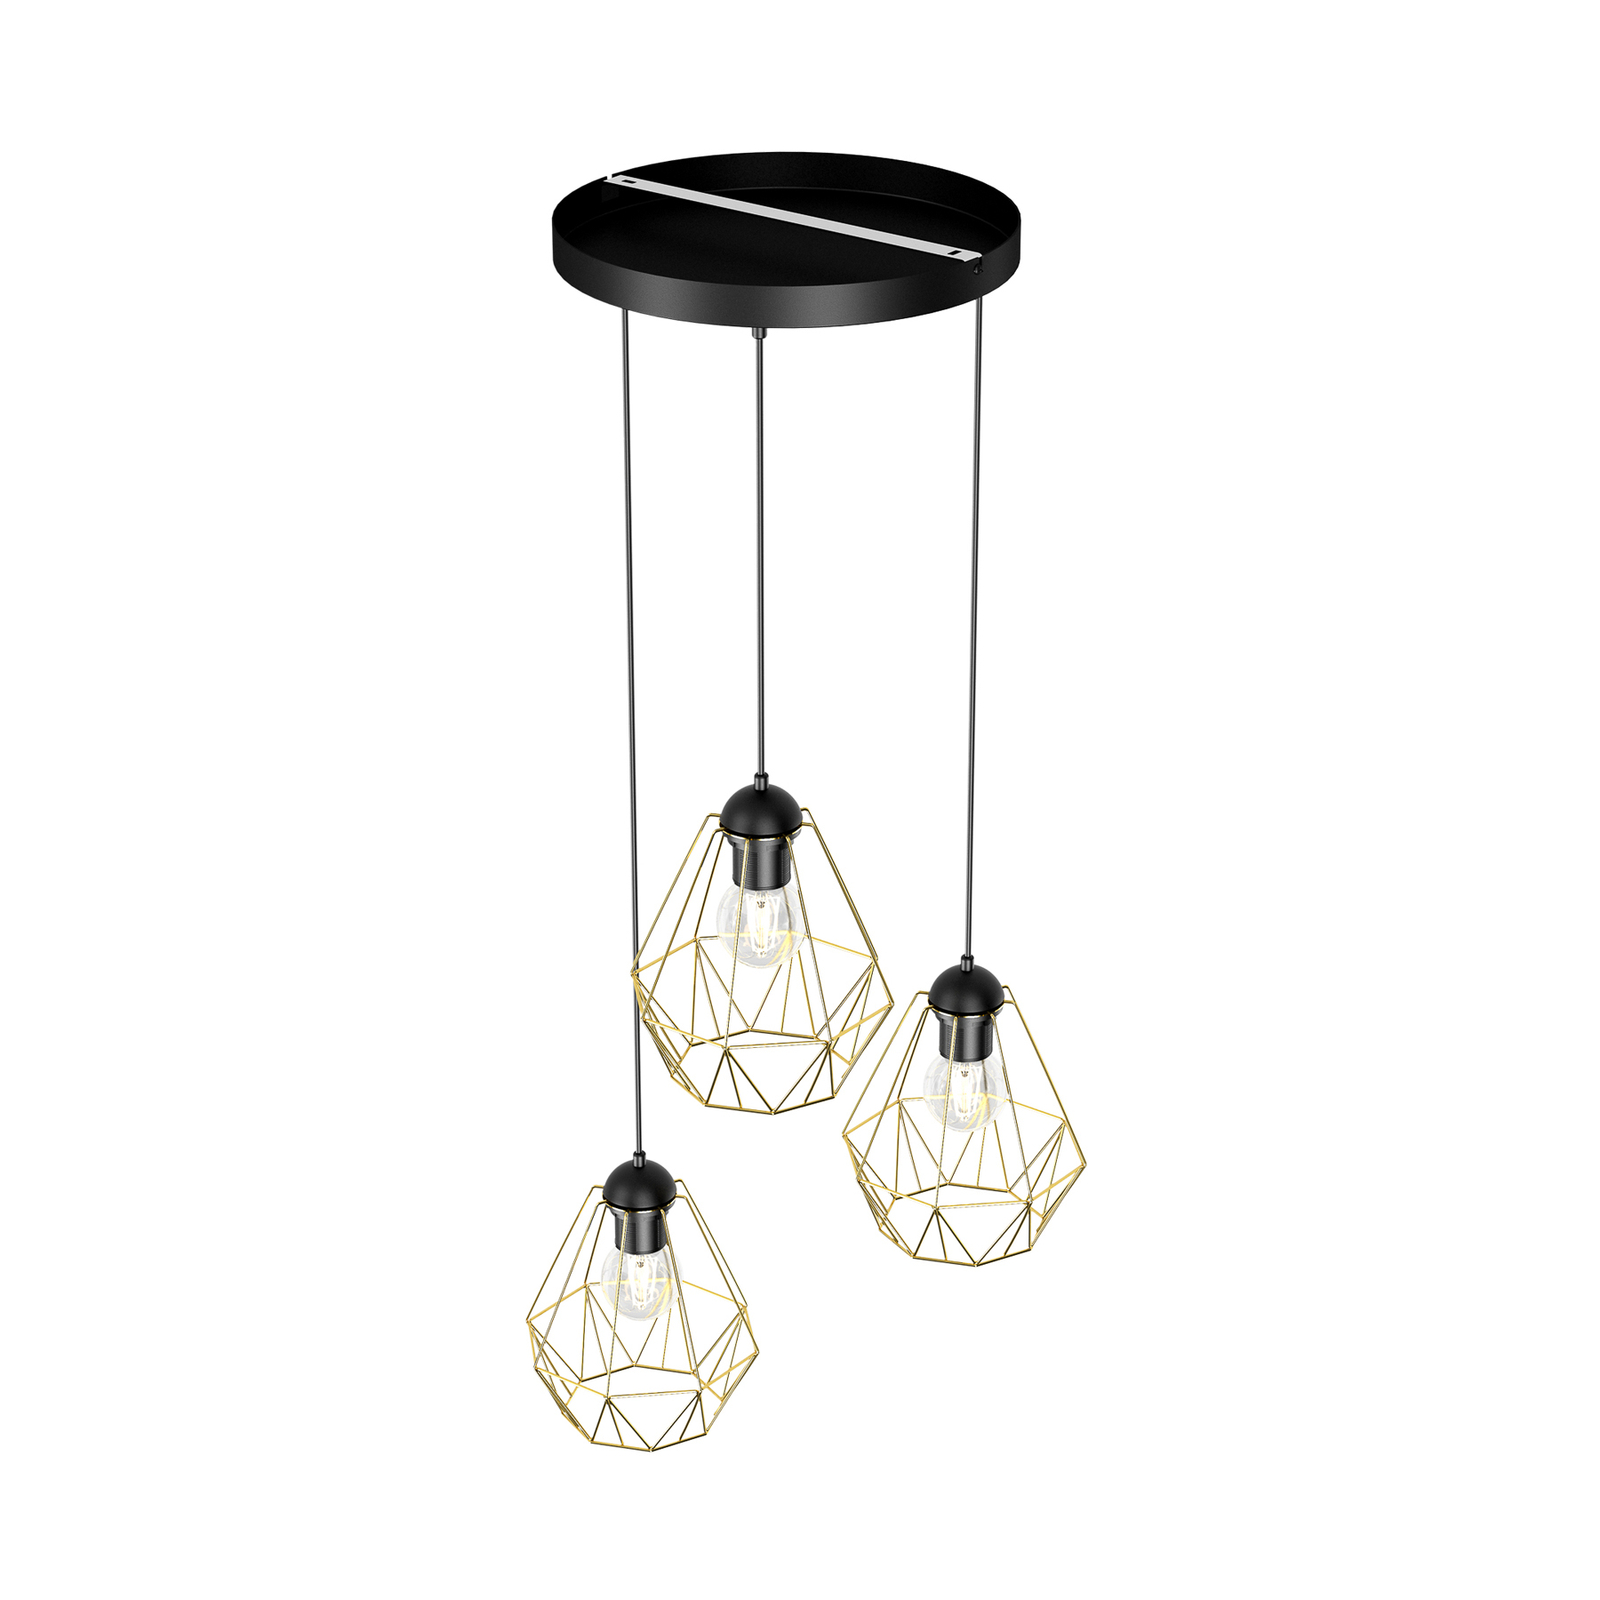 Jin hanglamp, zwart/messing, 3-lamps, rond